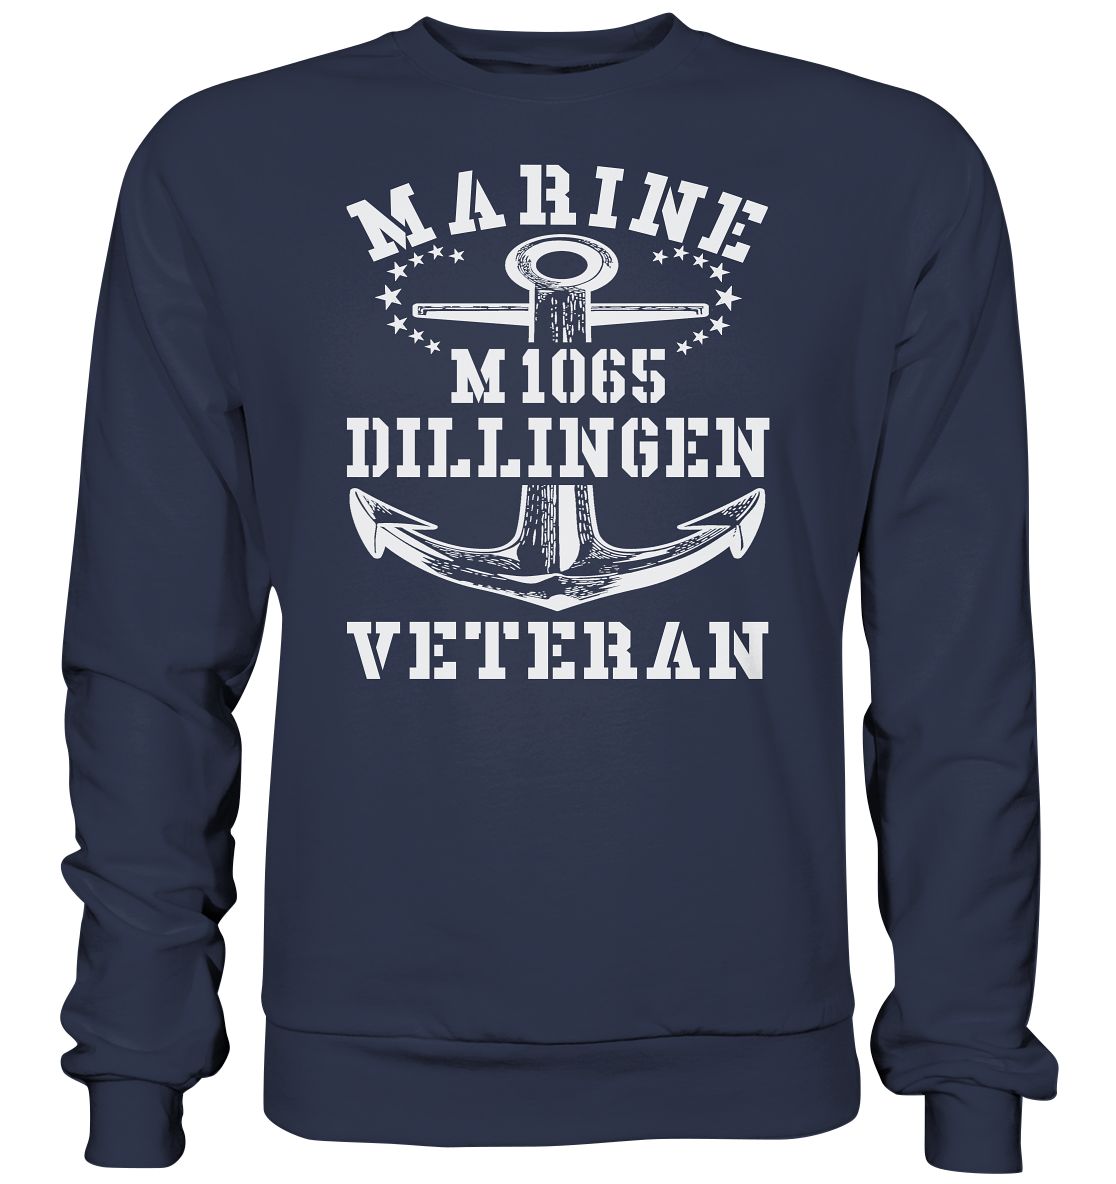 Mij.-Boot M1065 DILLINGEN Marine Veteran  - Premium Sweatshirt